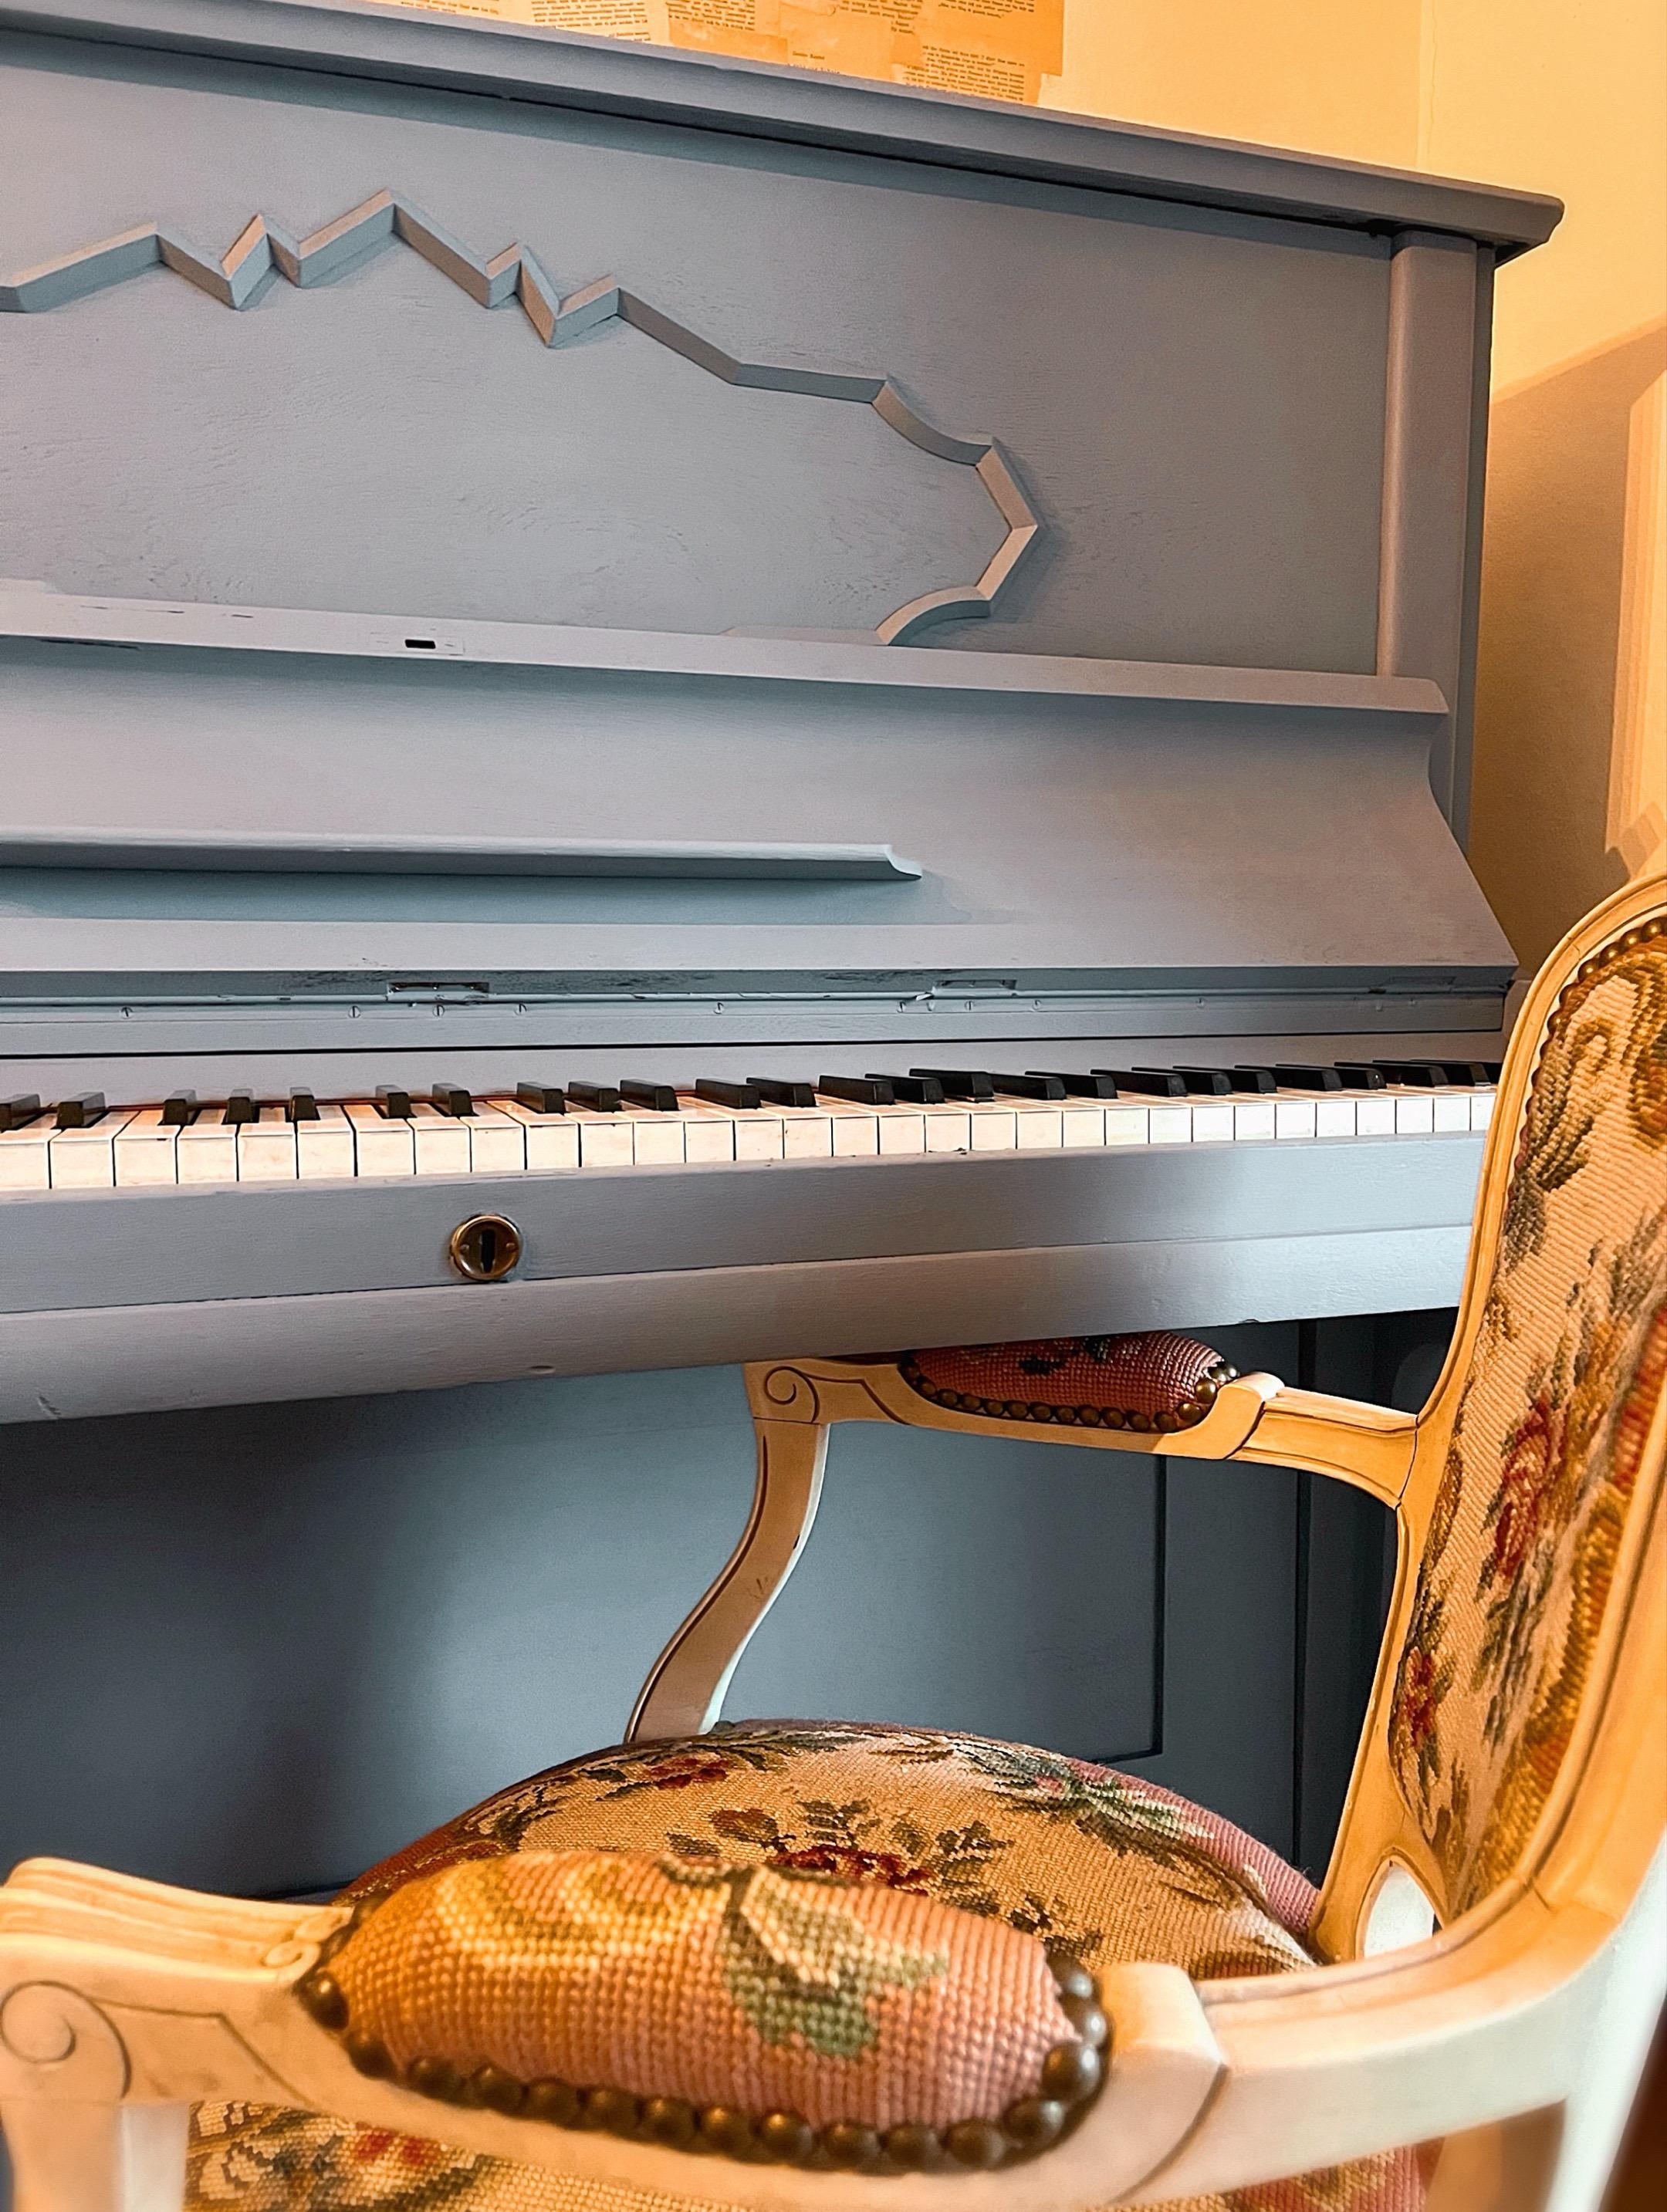 Eins meiner liebsten Projekte dieses Jahres: der taubenblaue Anstrich des alten Familienklaviers. Bringt so viel mehr Leichtigkeit in den Raum. 
#bunteranstrich #klavier